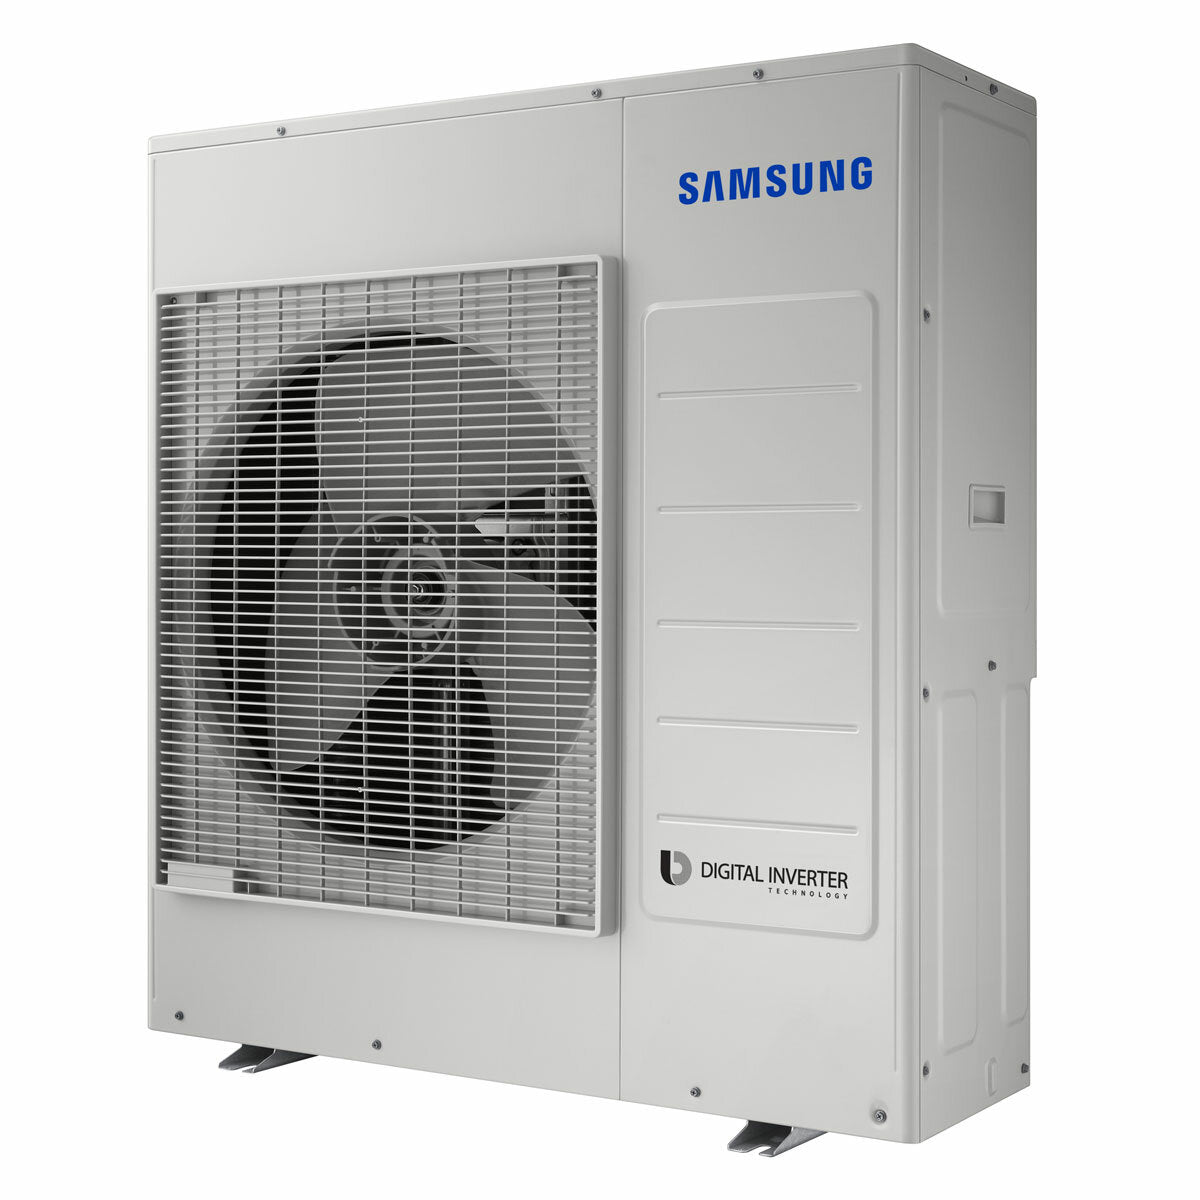 Samsung Windfree Elite 2023 air conditioner penta split 7000+7000+7000+9000+9000 BTU inverter A++ wifi outdoor unit 10 kW